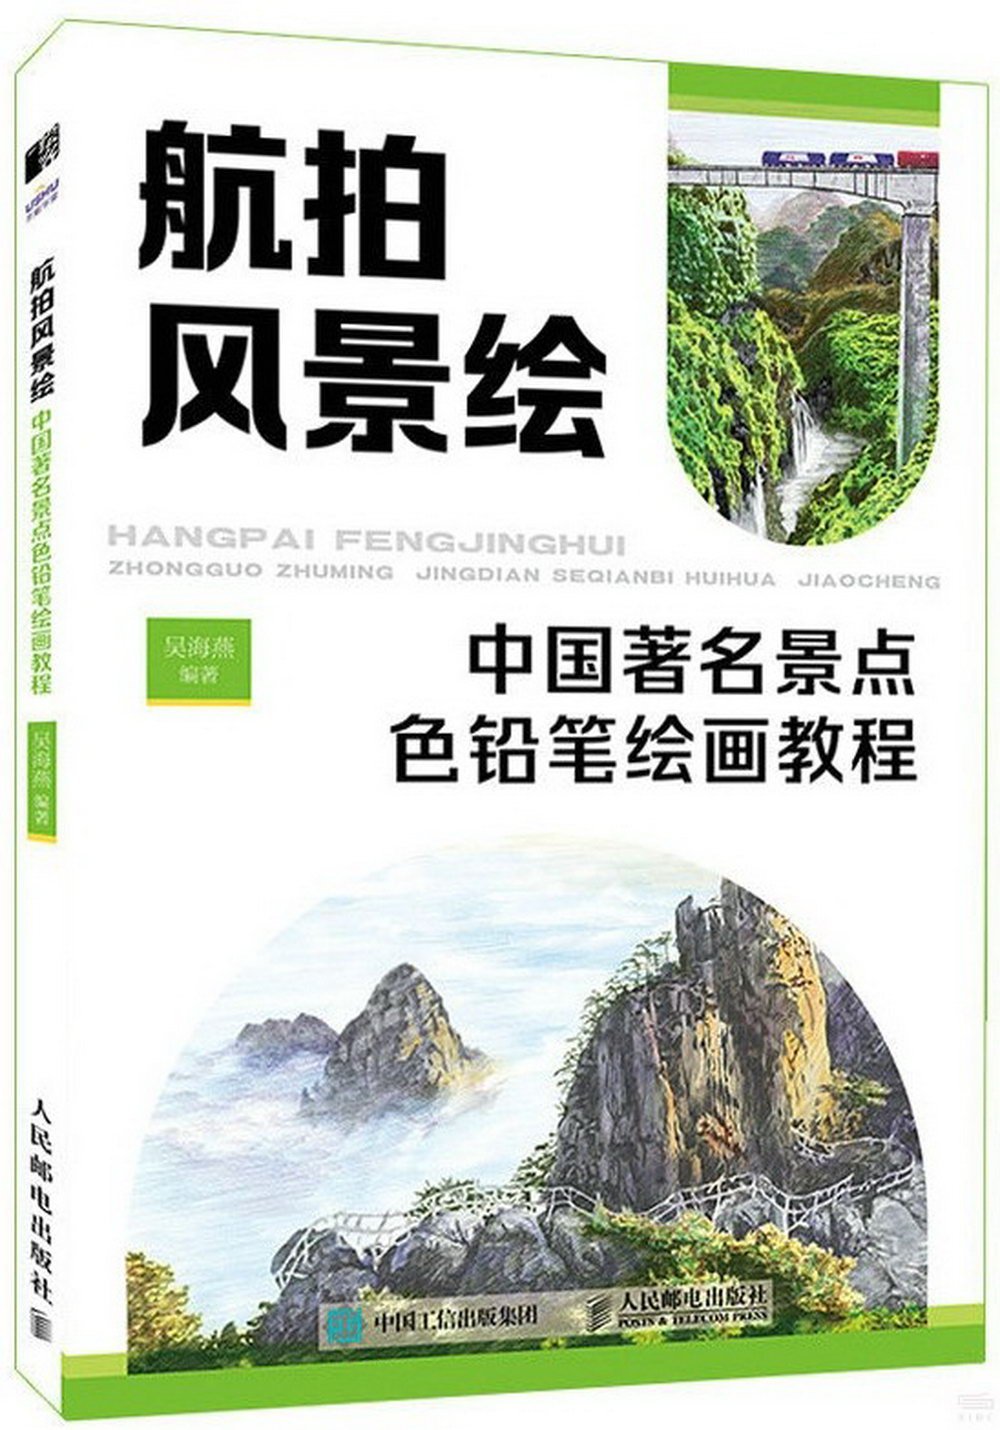 航拍風景繪：中國著名景點色鉛筆繪畫教程